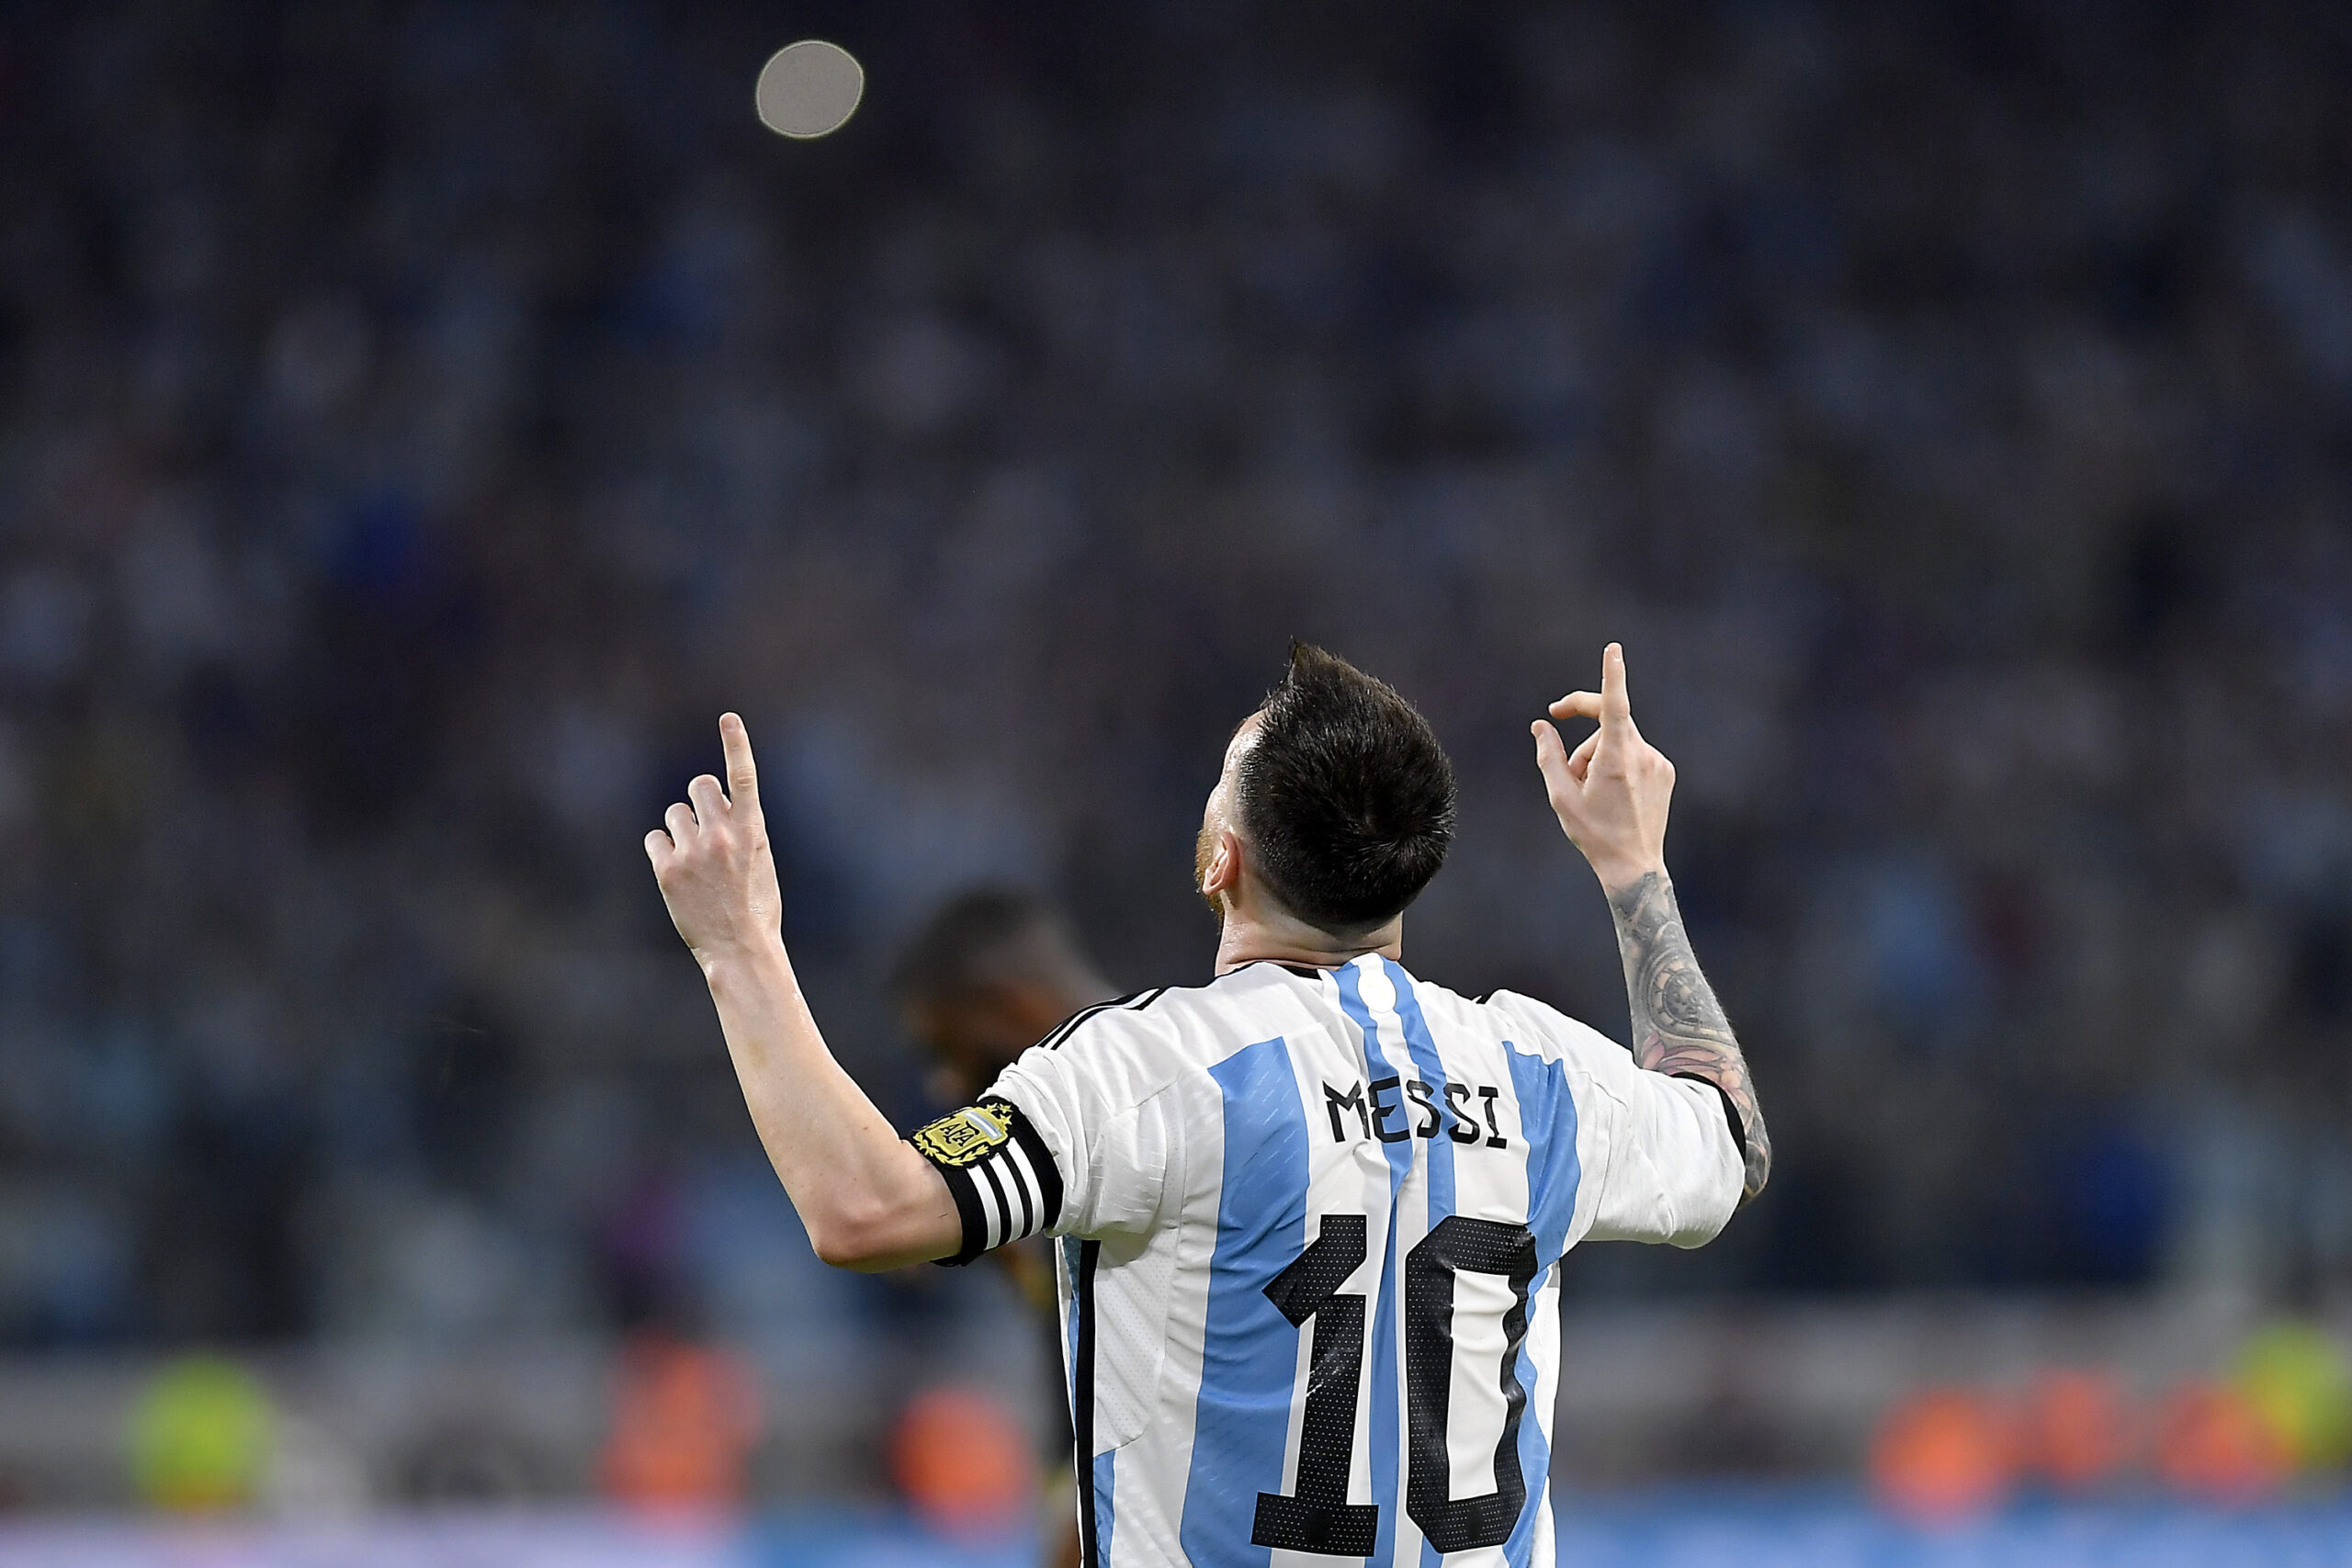 ¡Messi superó los 100 goles con la Selección Argentina! | Canal Showsport